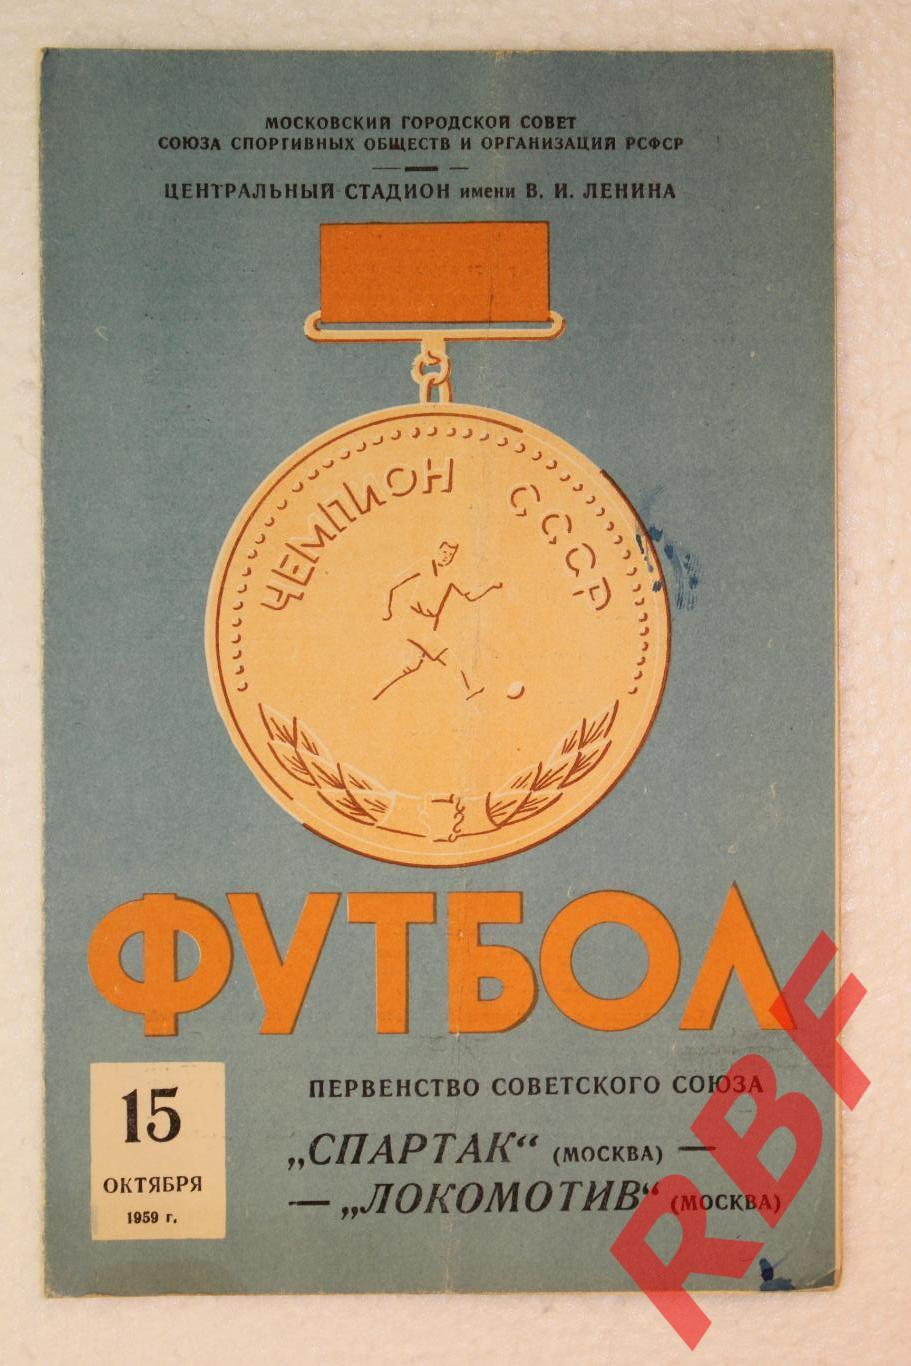 Спартак Москва - Локомотив Москва,15октября 1959